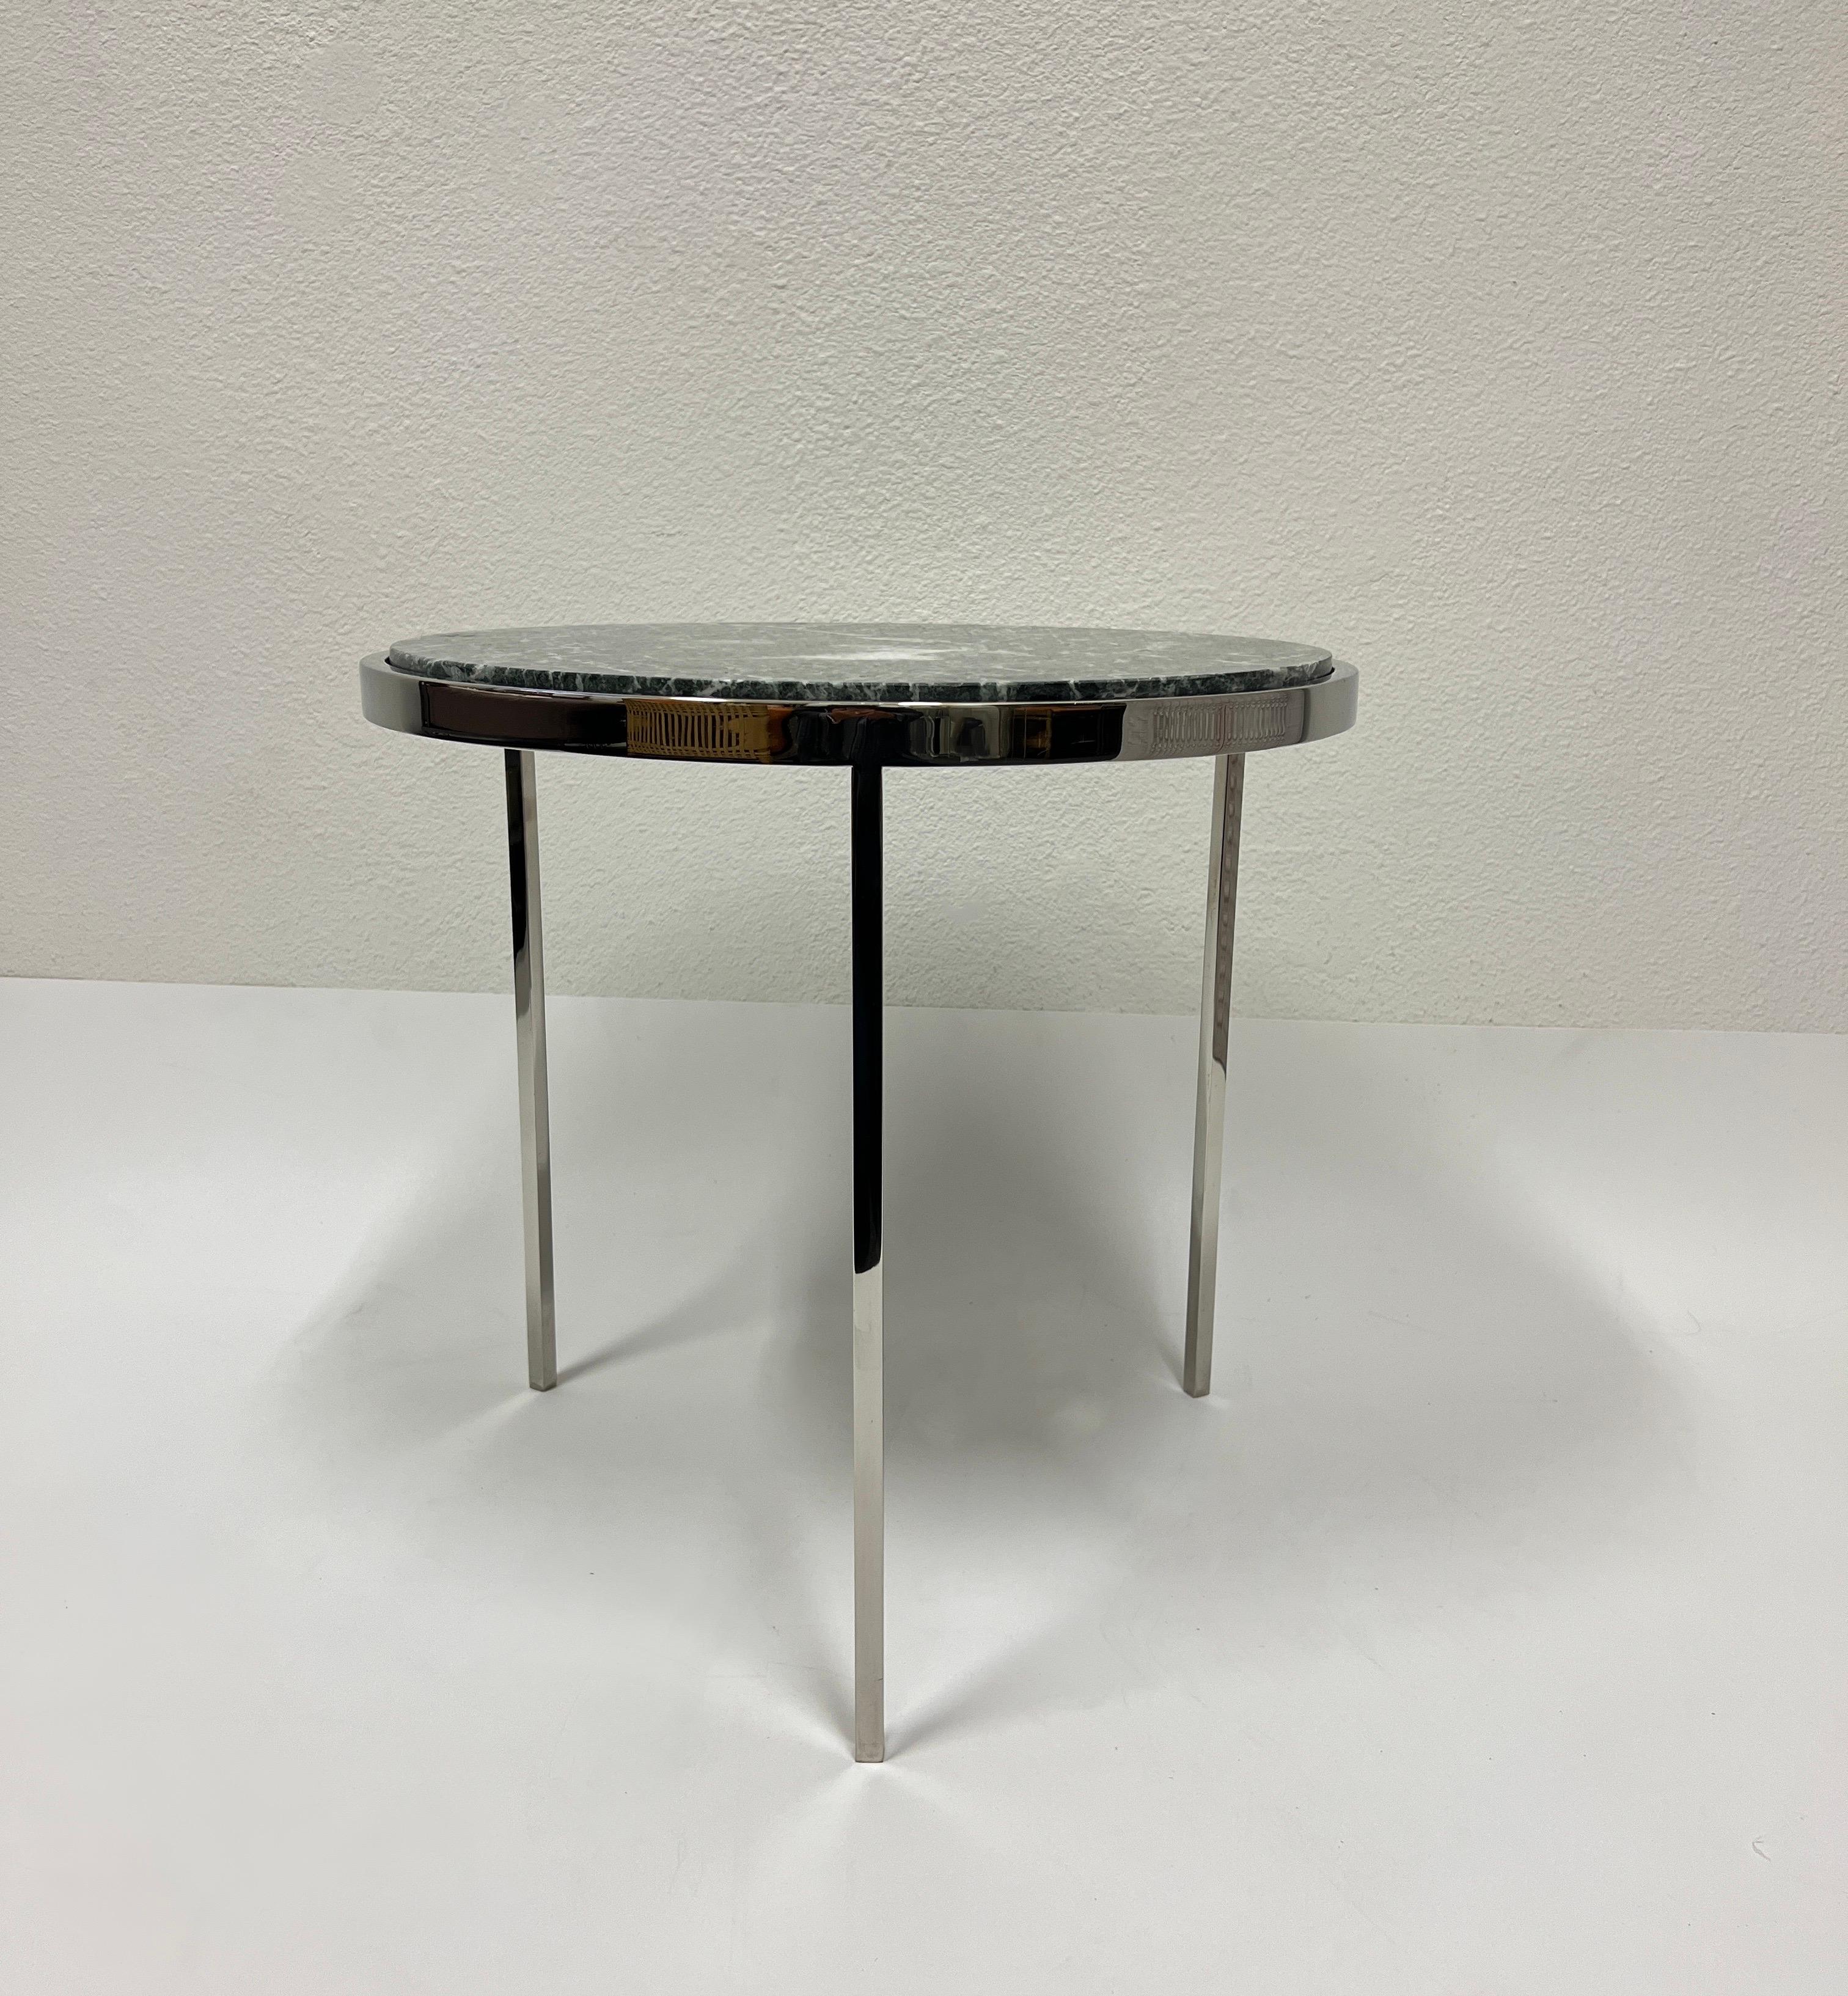 Table d'appoint ronde tripode en acier inoxydable poli des années 1980 avec un plateau en marbre vert de Brueton.
Dans un bel état original vintage.
Mesures : 19,13